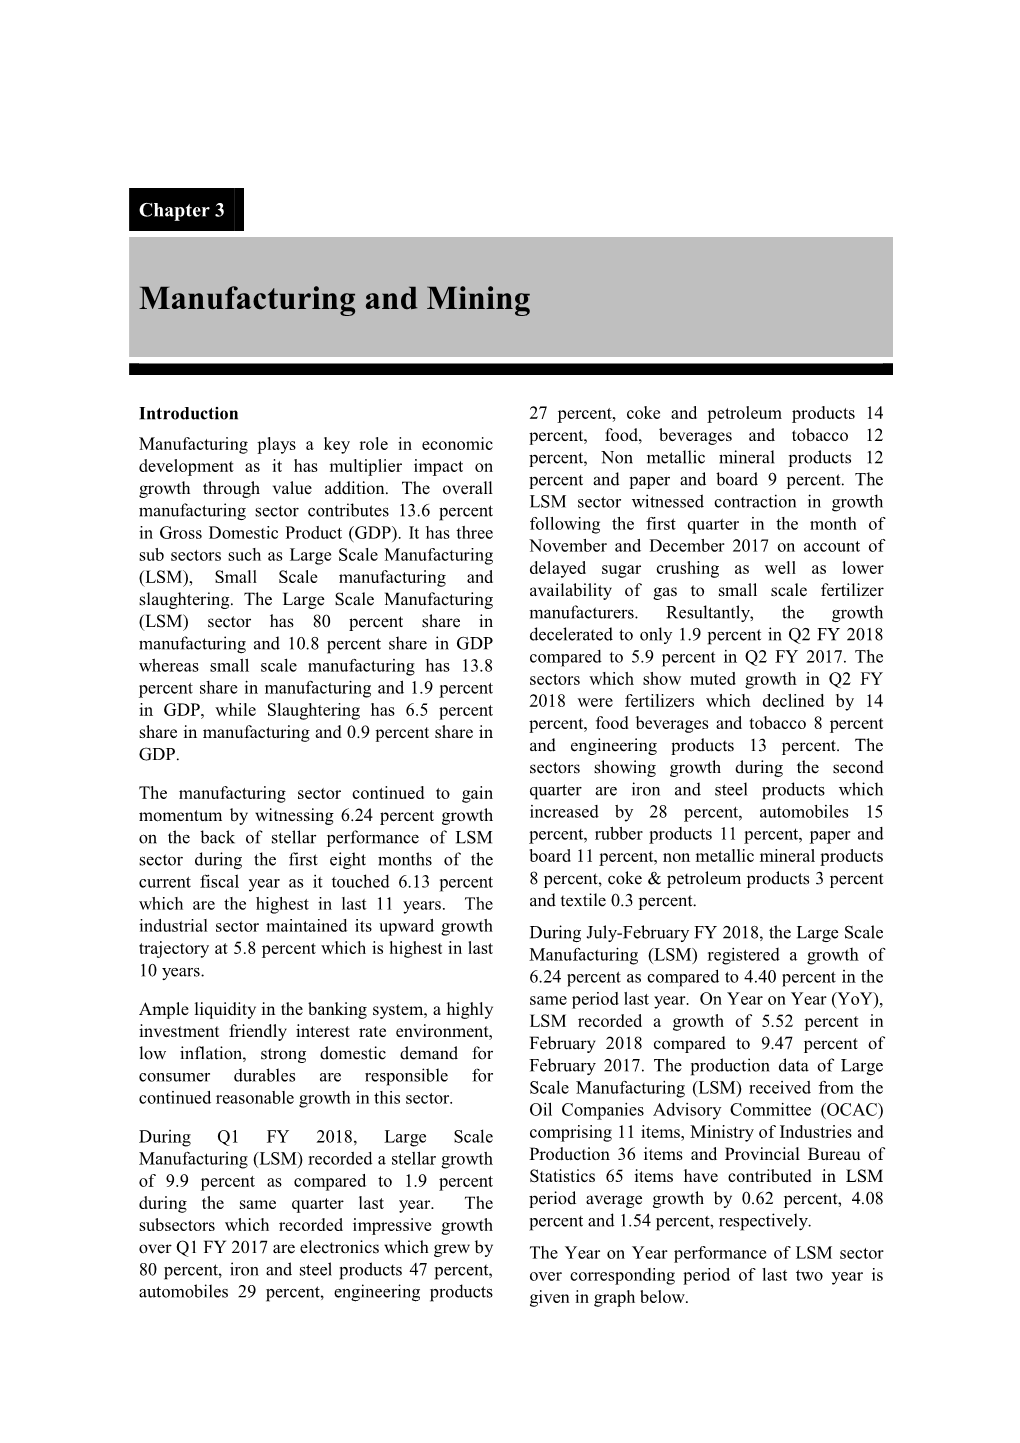 Manufacturing & Mining